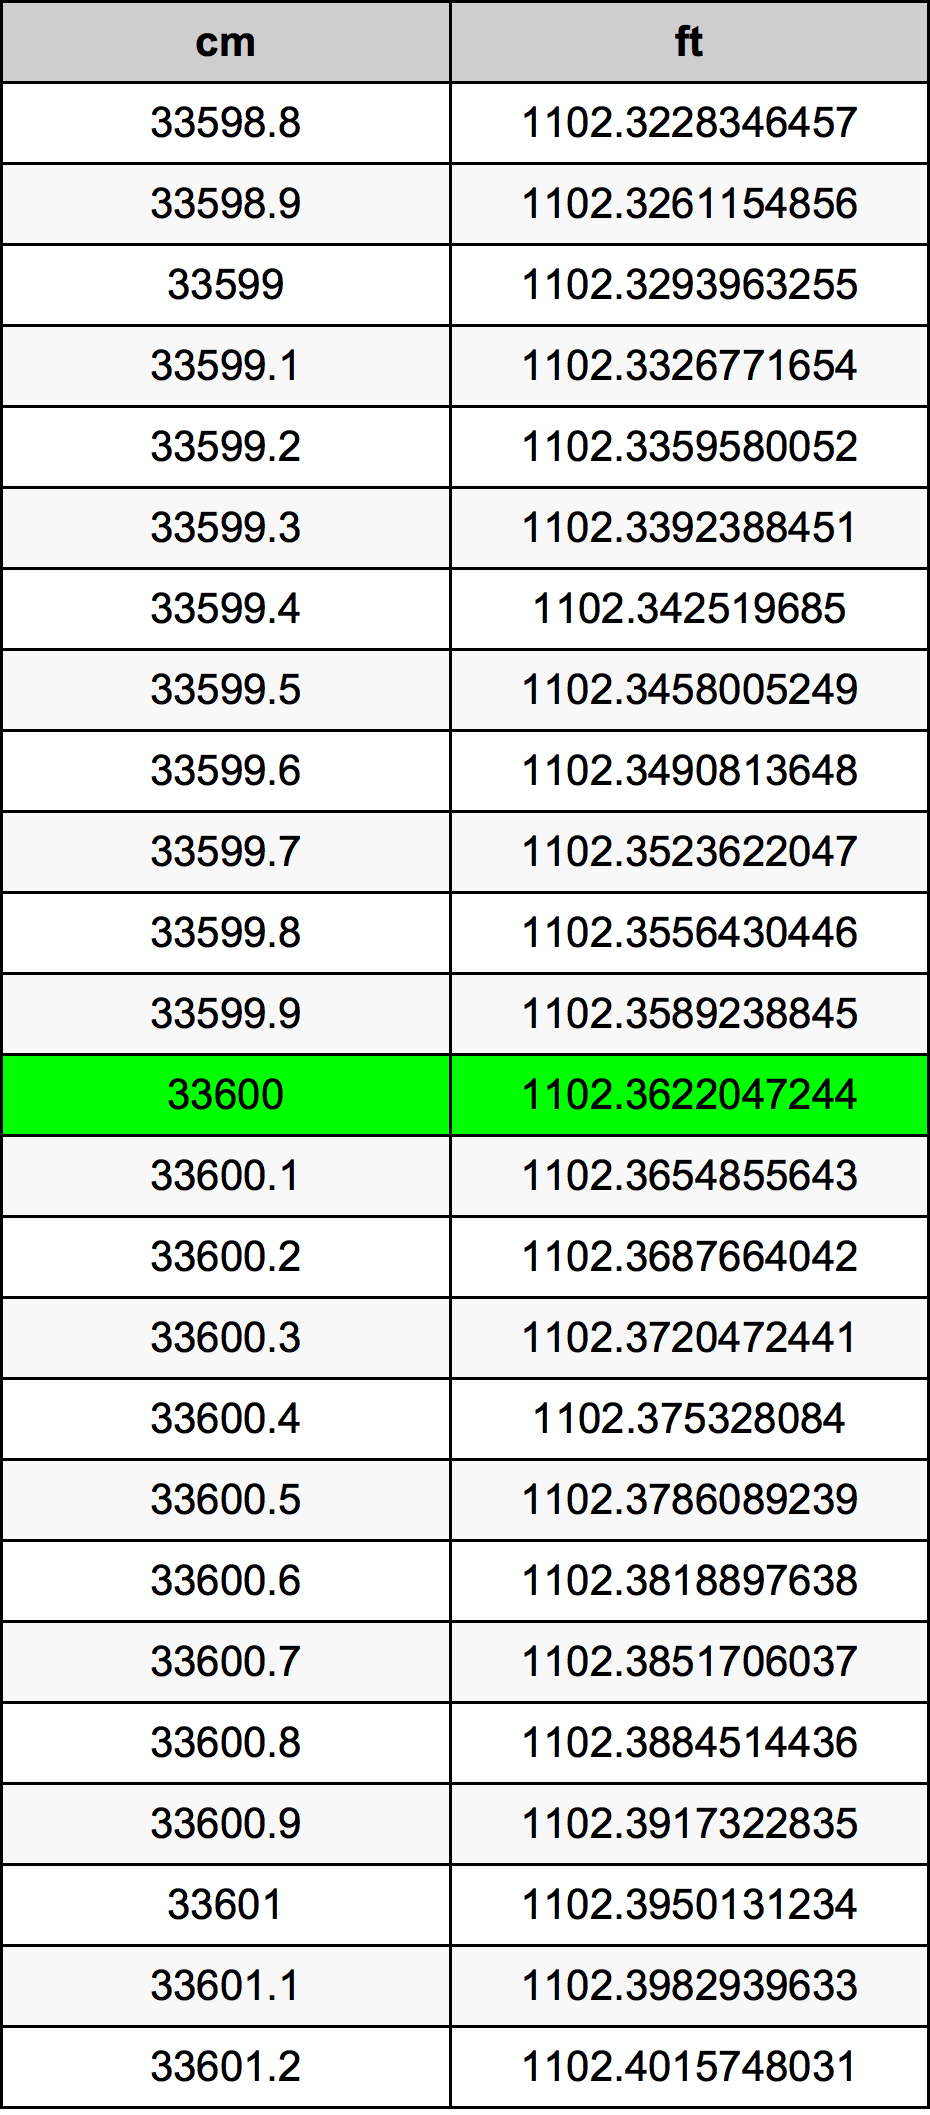 33600 Centiméter átszámítási táblázat